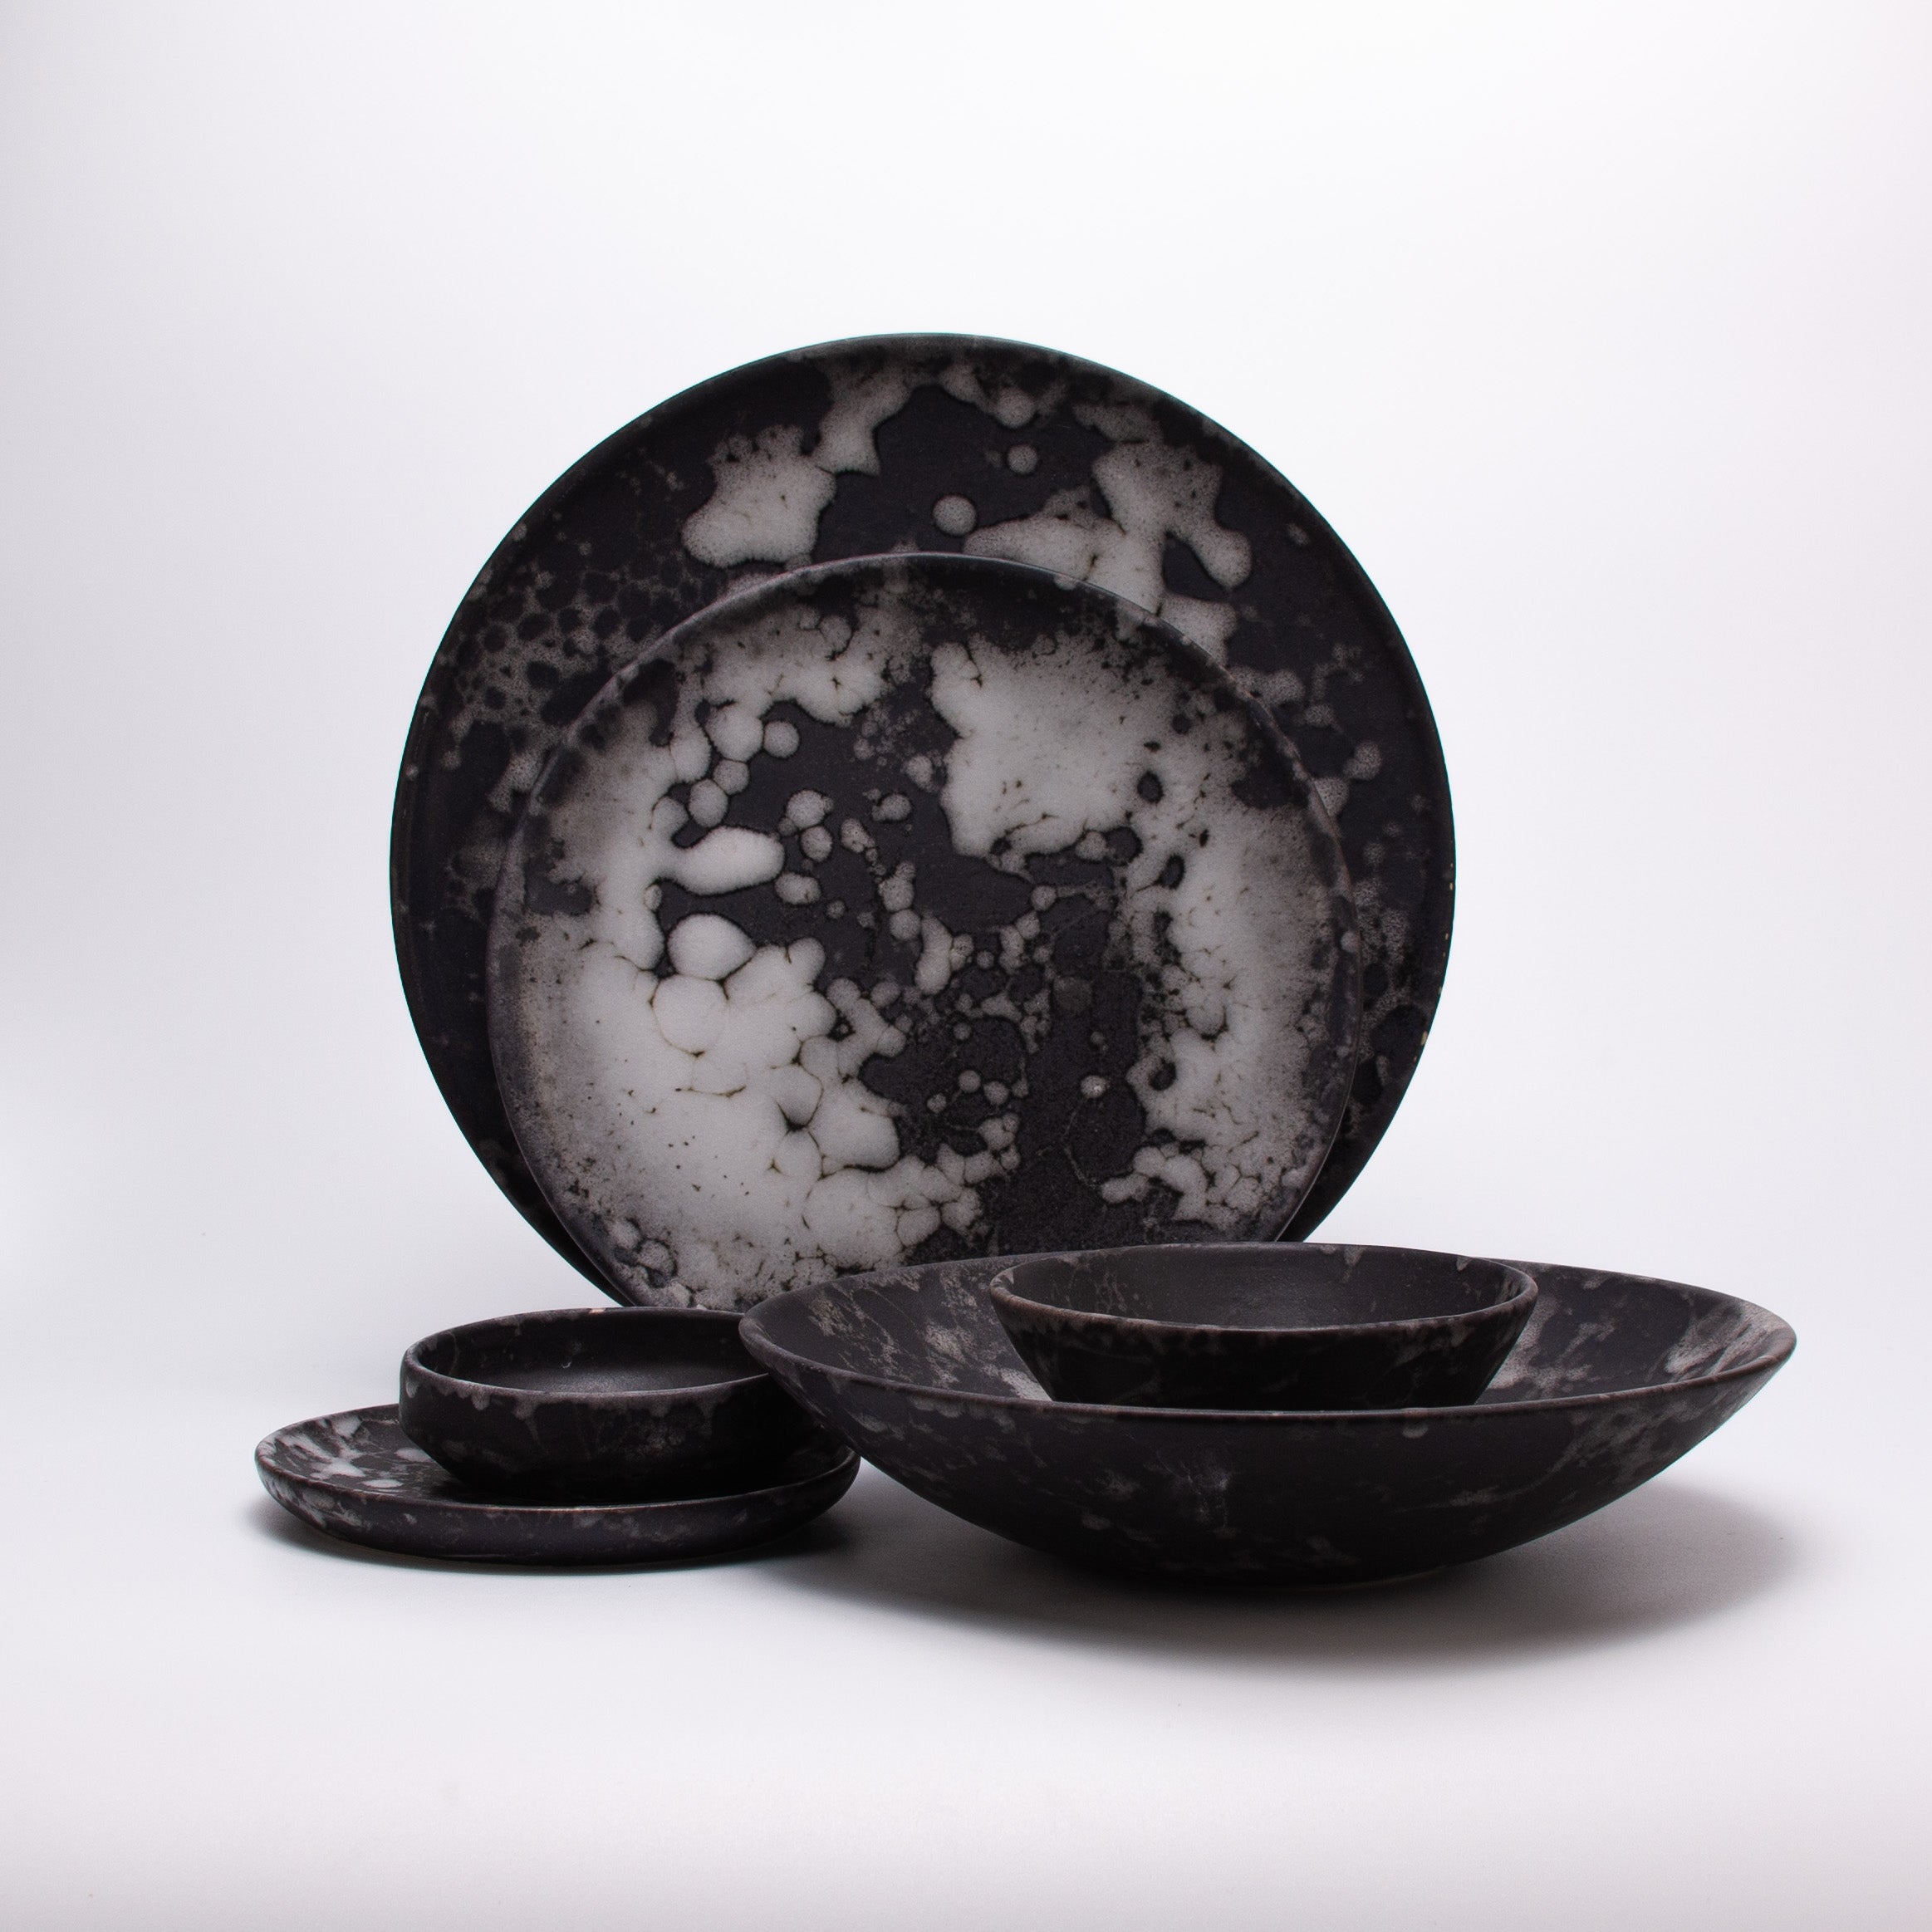 Moon plates and bowls